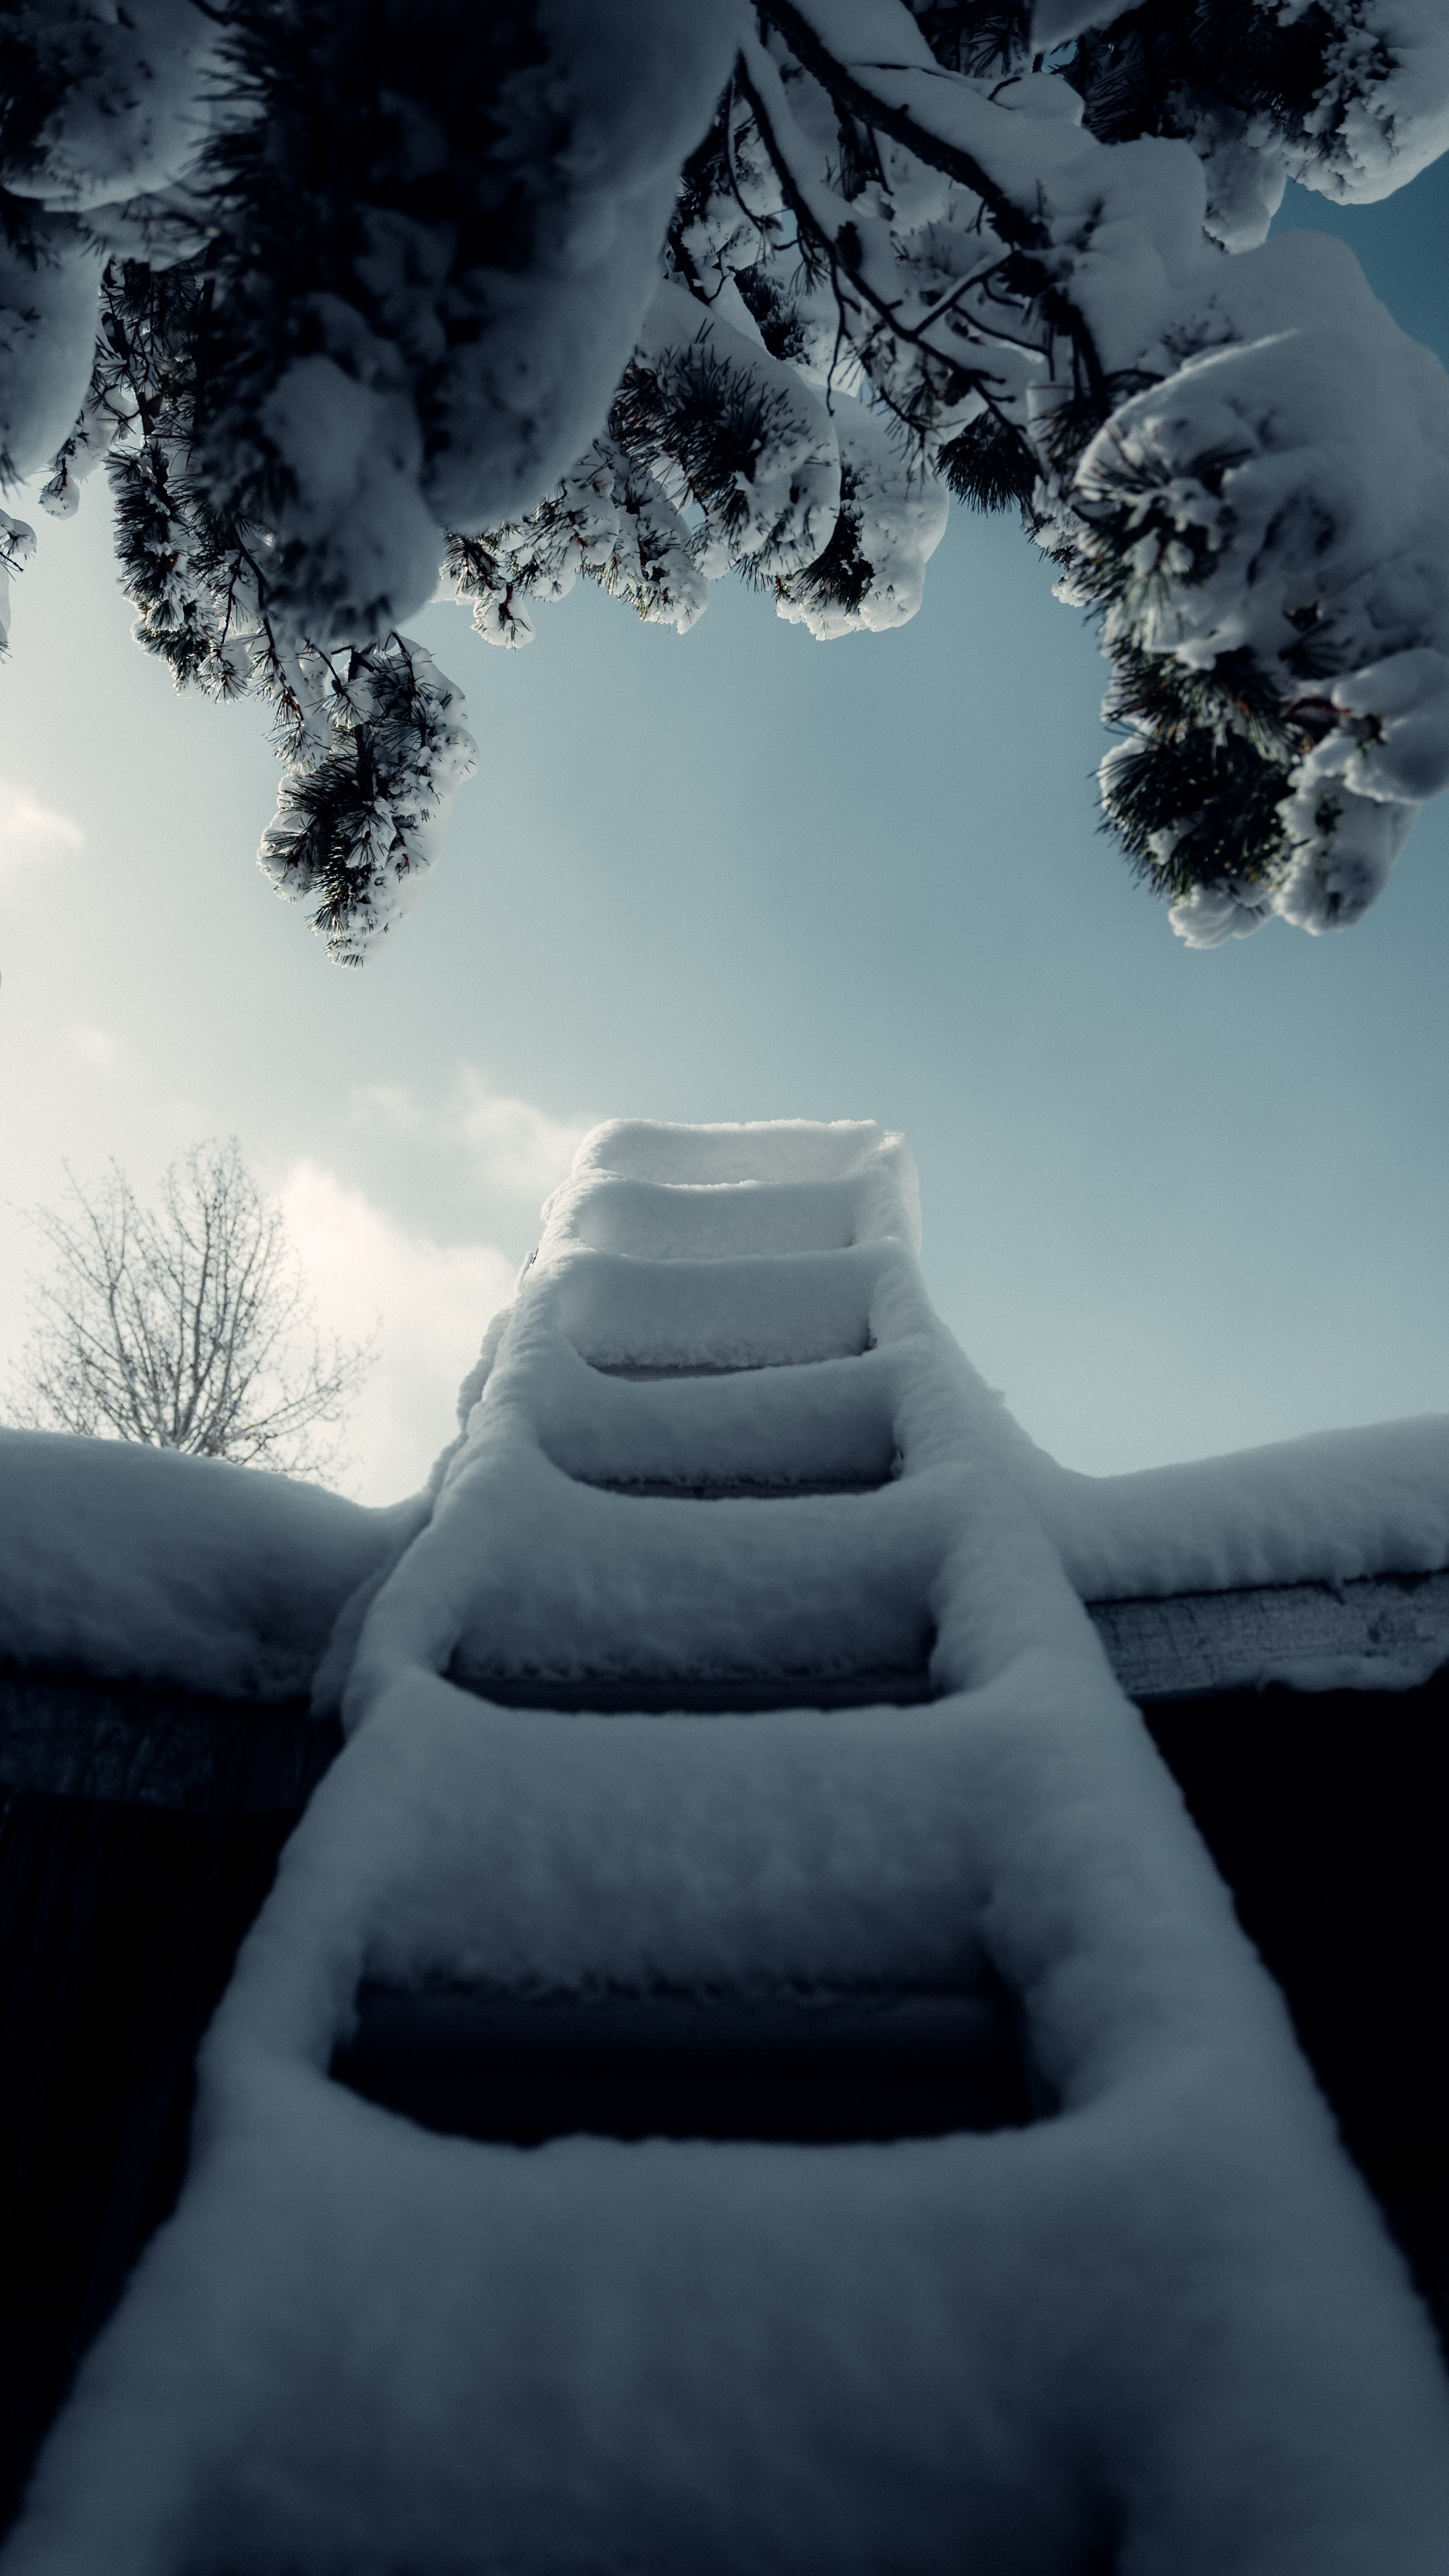 Скачать обои бесплатно Лестница, Снег, Разное, Ветка, Зима картинка на рабочий стол ПК